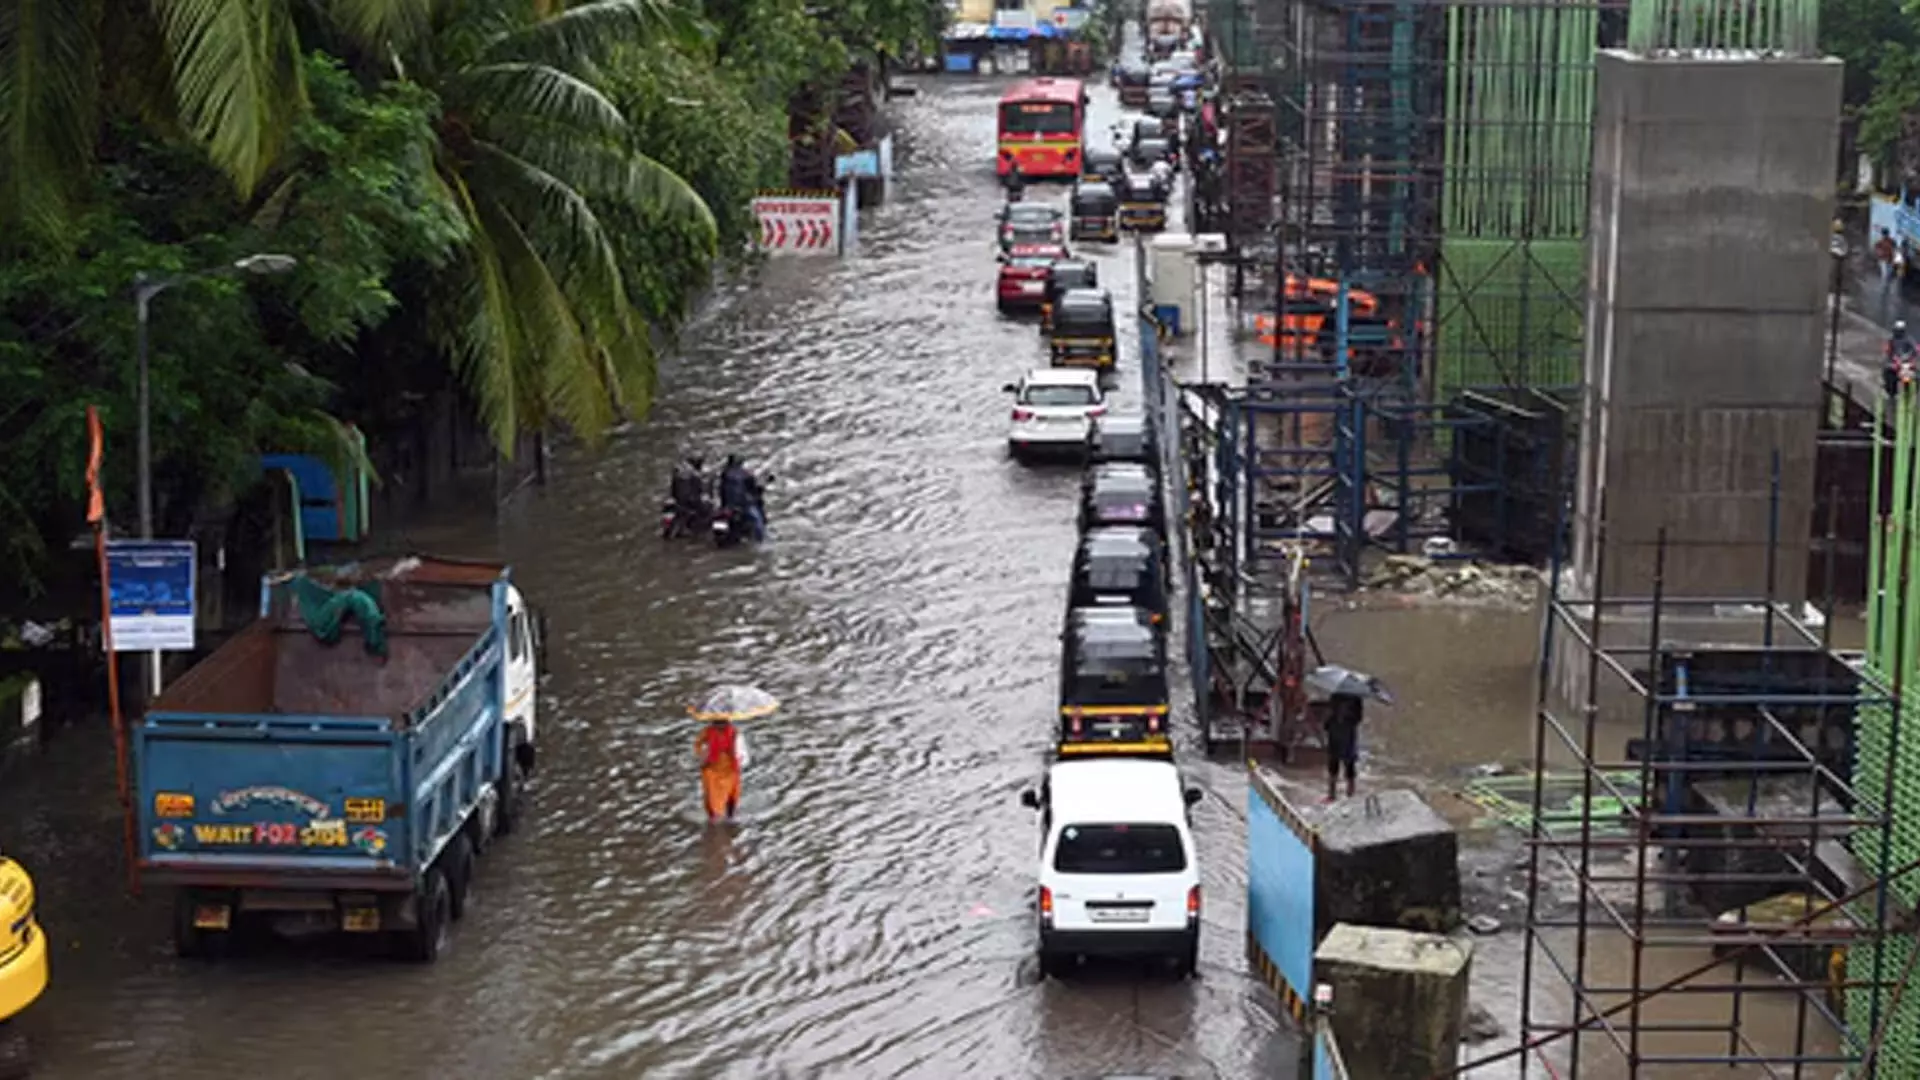 MUMBAI: मुंबई में भारी बारिश की चेतावनी, पुलिस ने जारी की एडवाइजरी